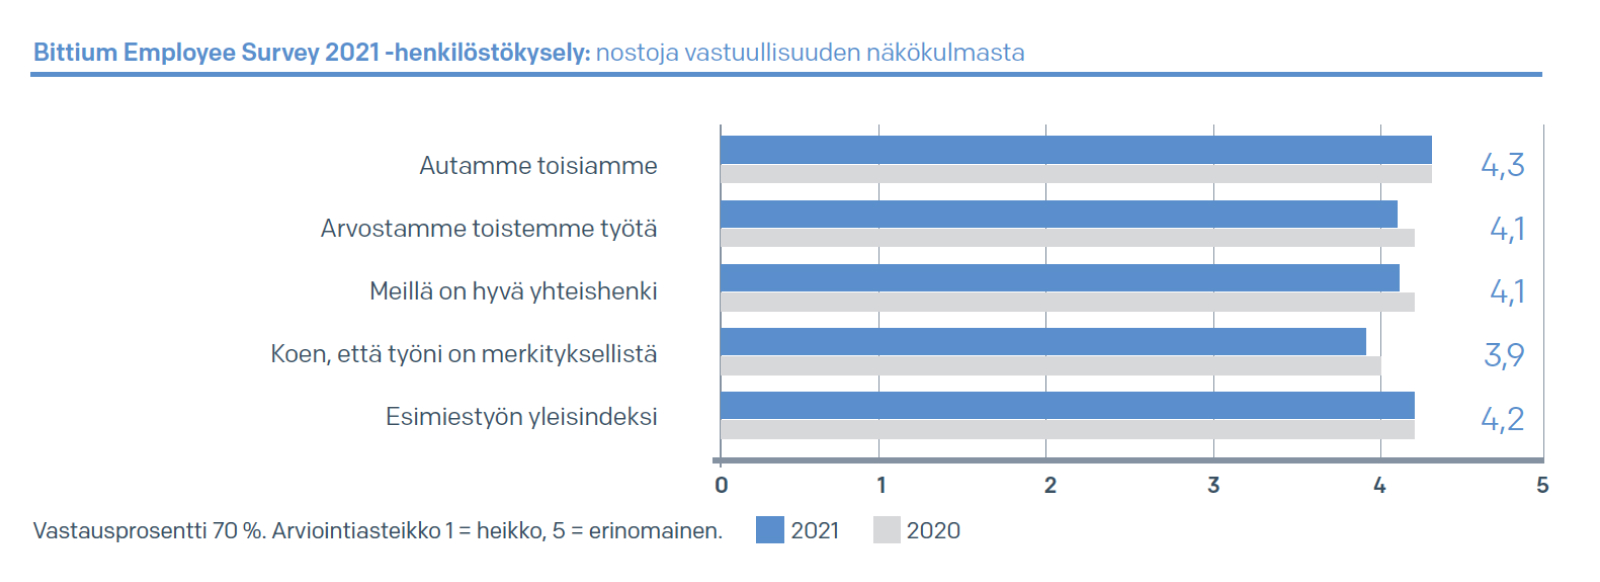 Bittium Employee Survey 2021 -henkilöstökysely: nostoja vastuullisuuden näkökulmasta